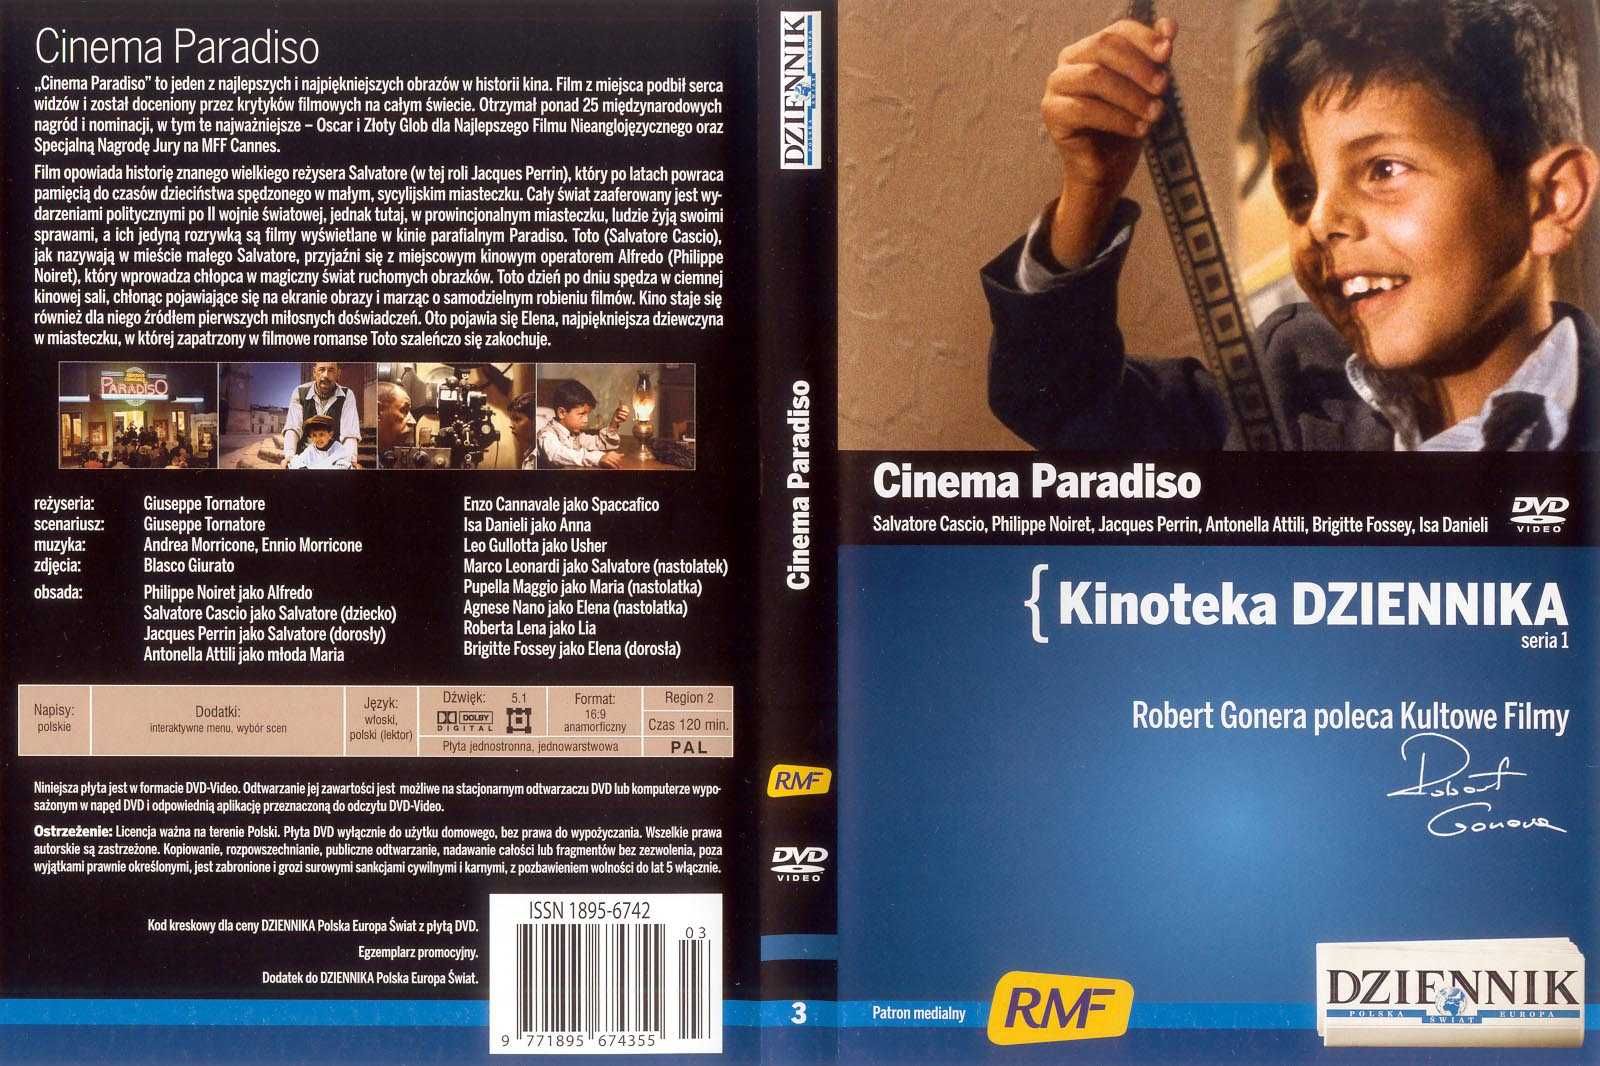 Filmy na DVD w kolekcji Kinoteka "Dziennika" cz.1